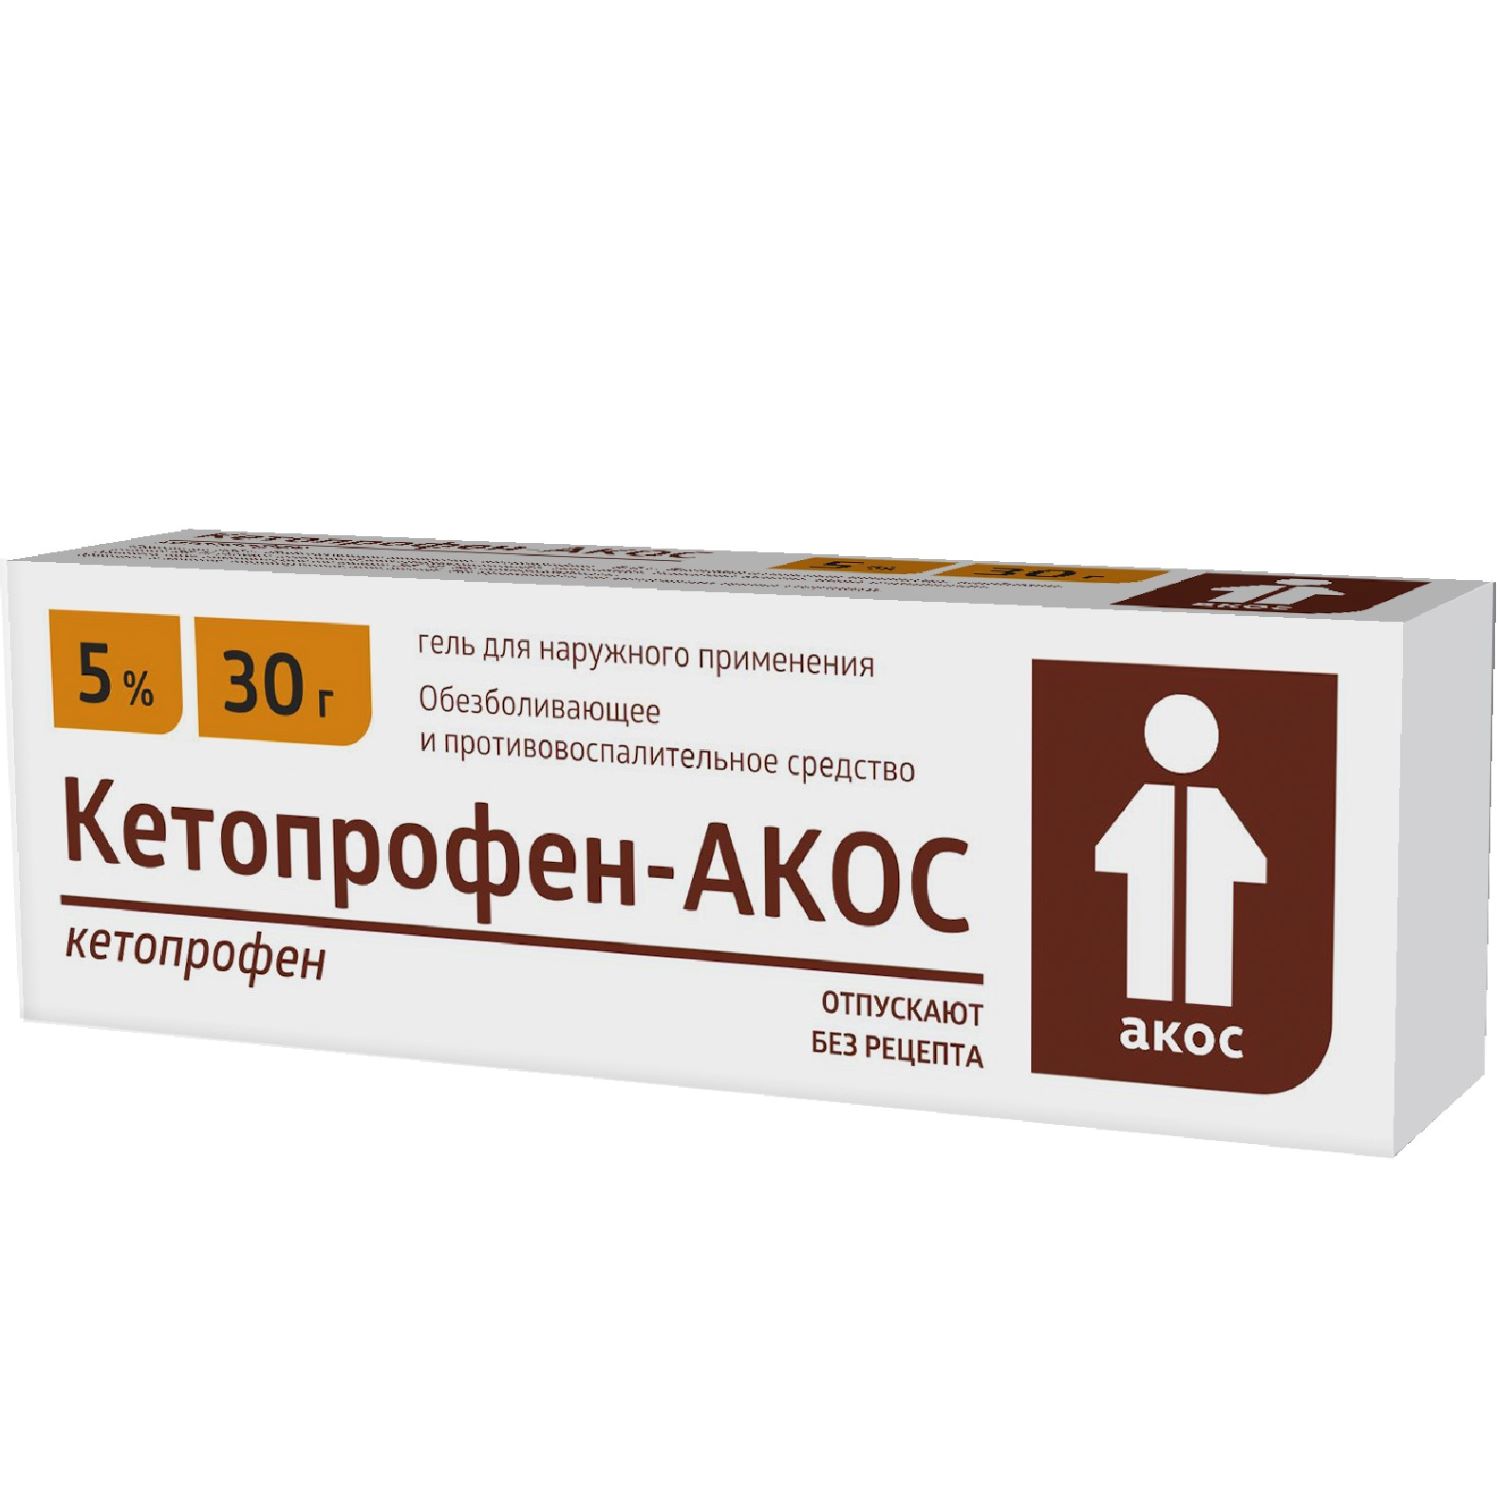 Купить Кетопрофен-АКОС гель д/наружн. прим. 5% 30г, Синтез